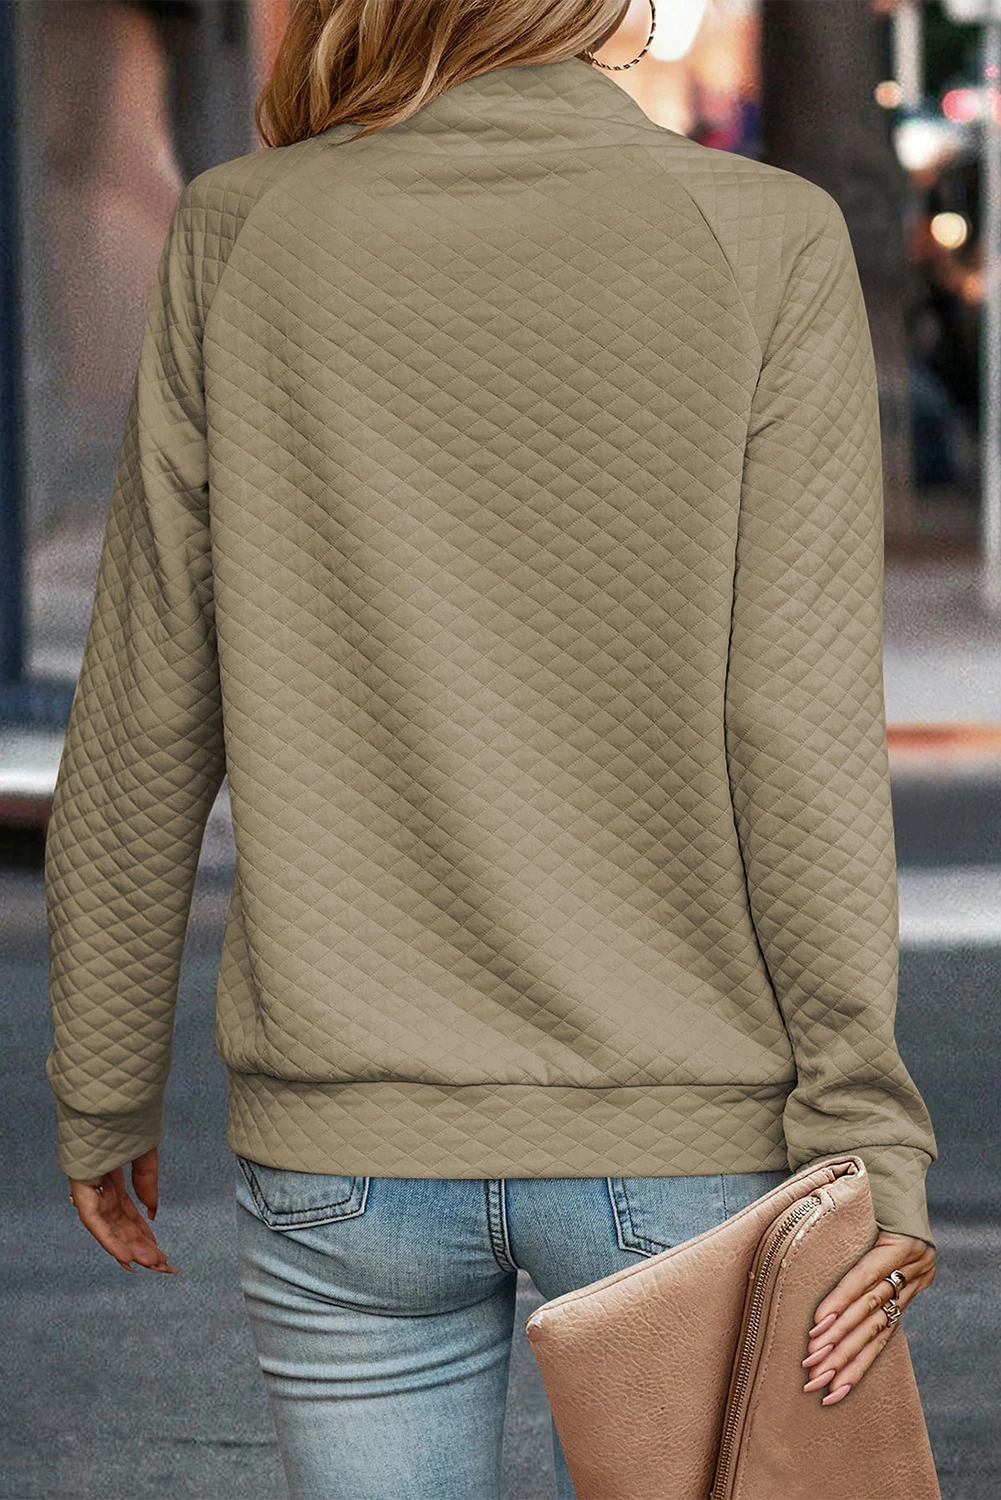 Dear-Lover Collar Button Up Neckline Stand Neck Pullover Quilted Sweatshirt